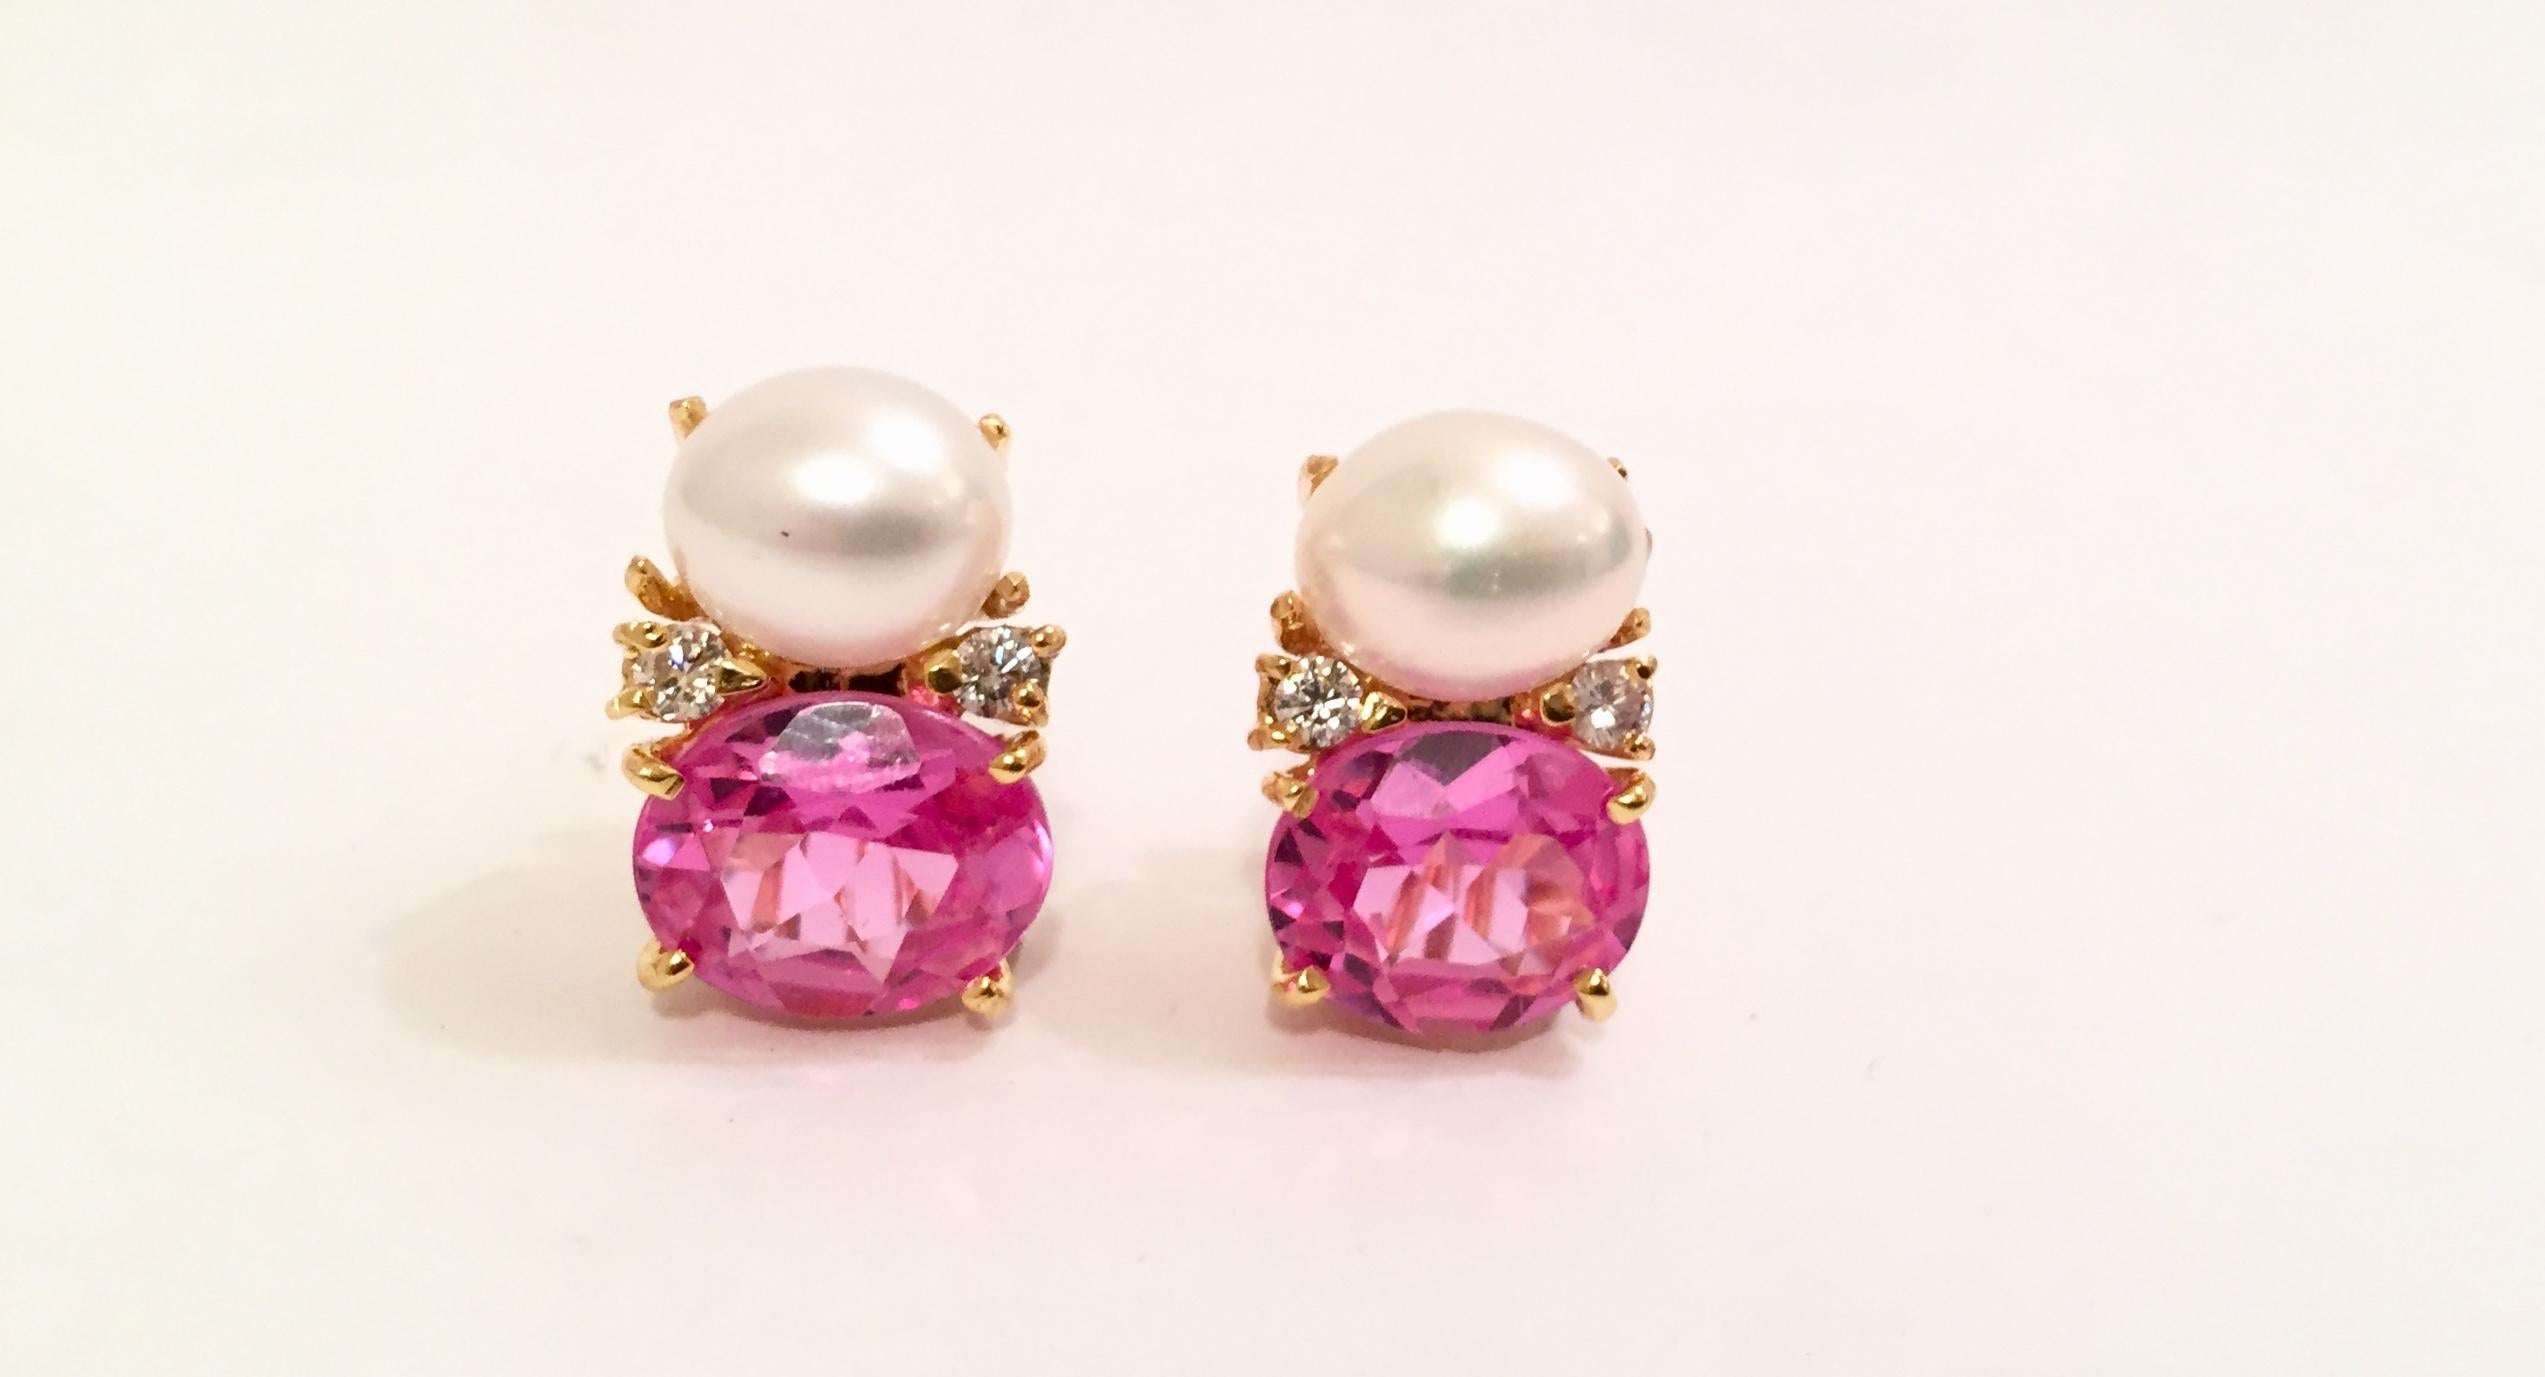 18kt Medium Gum Drop Ohrringe mit Perlen und rosa Topas und vier Diamanten.

Die mittelgroßen GUM DROP™-Ohrringe aus 18 Karat Gelbgold beherbergen eine Süßwasserperle und einen facettierten rosa Topas (jeweils ca. 5 Karat) sowie 4 Diamanten mit